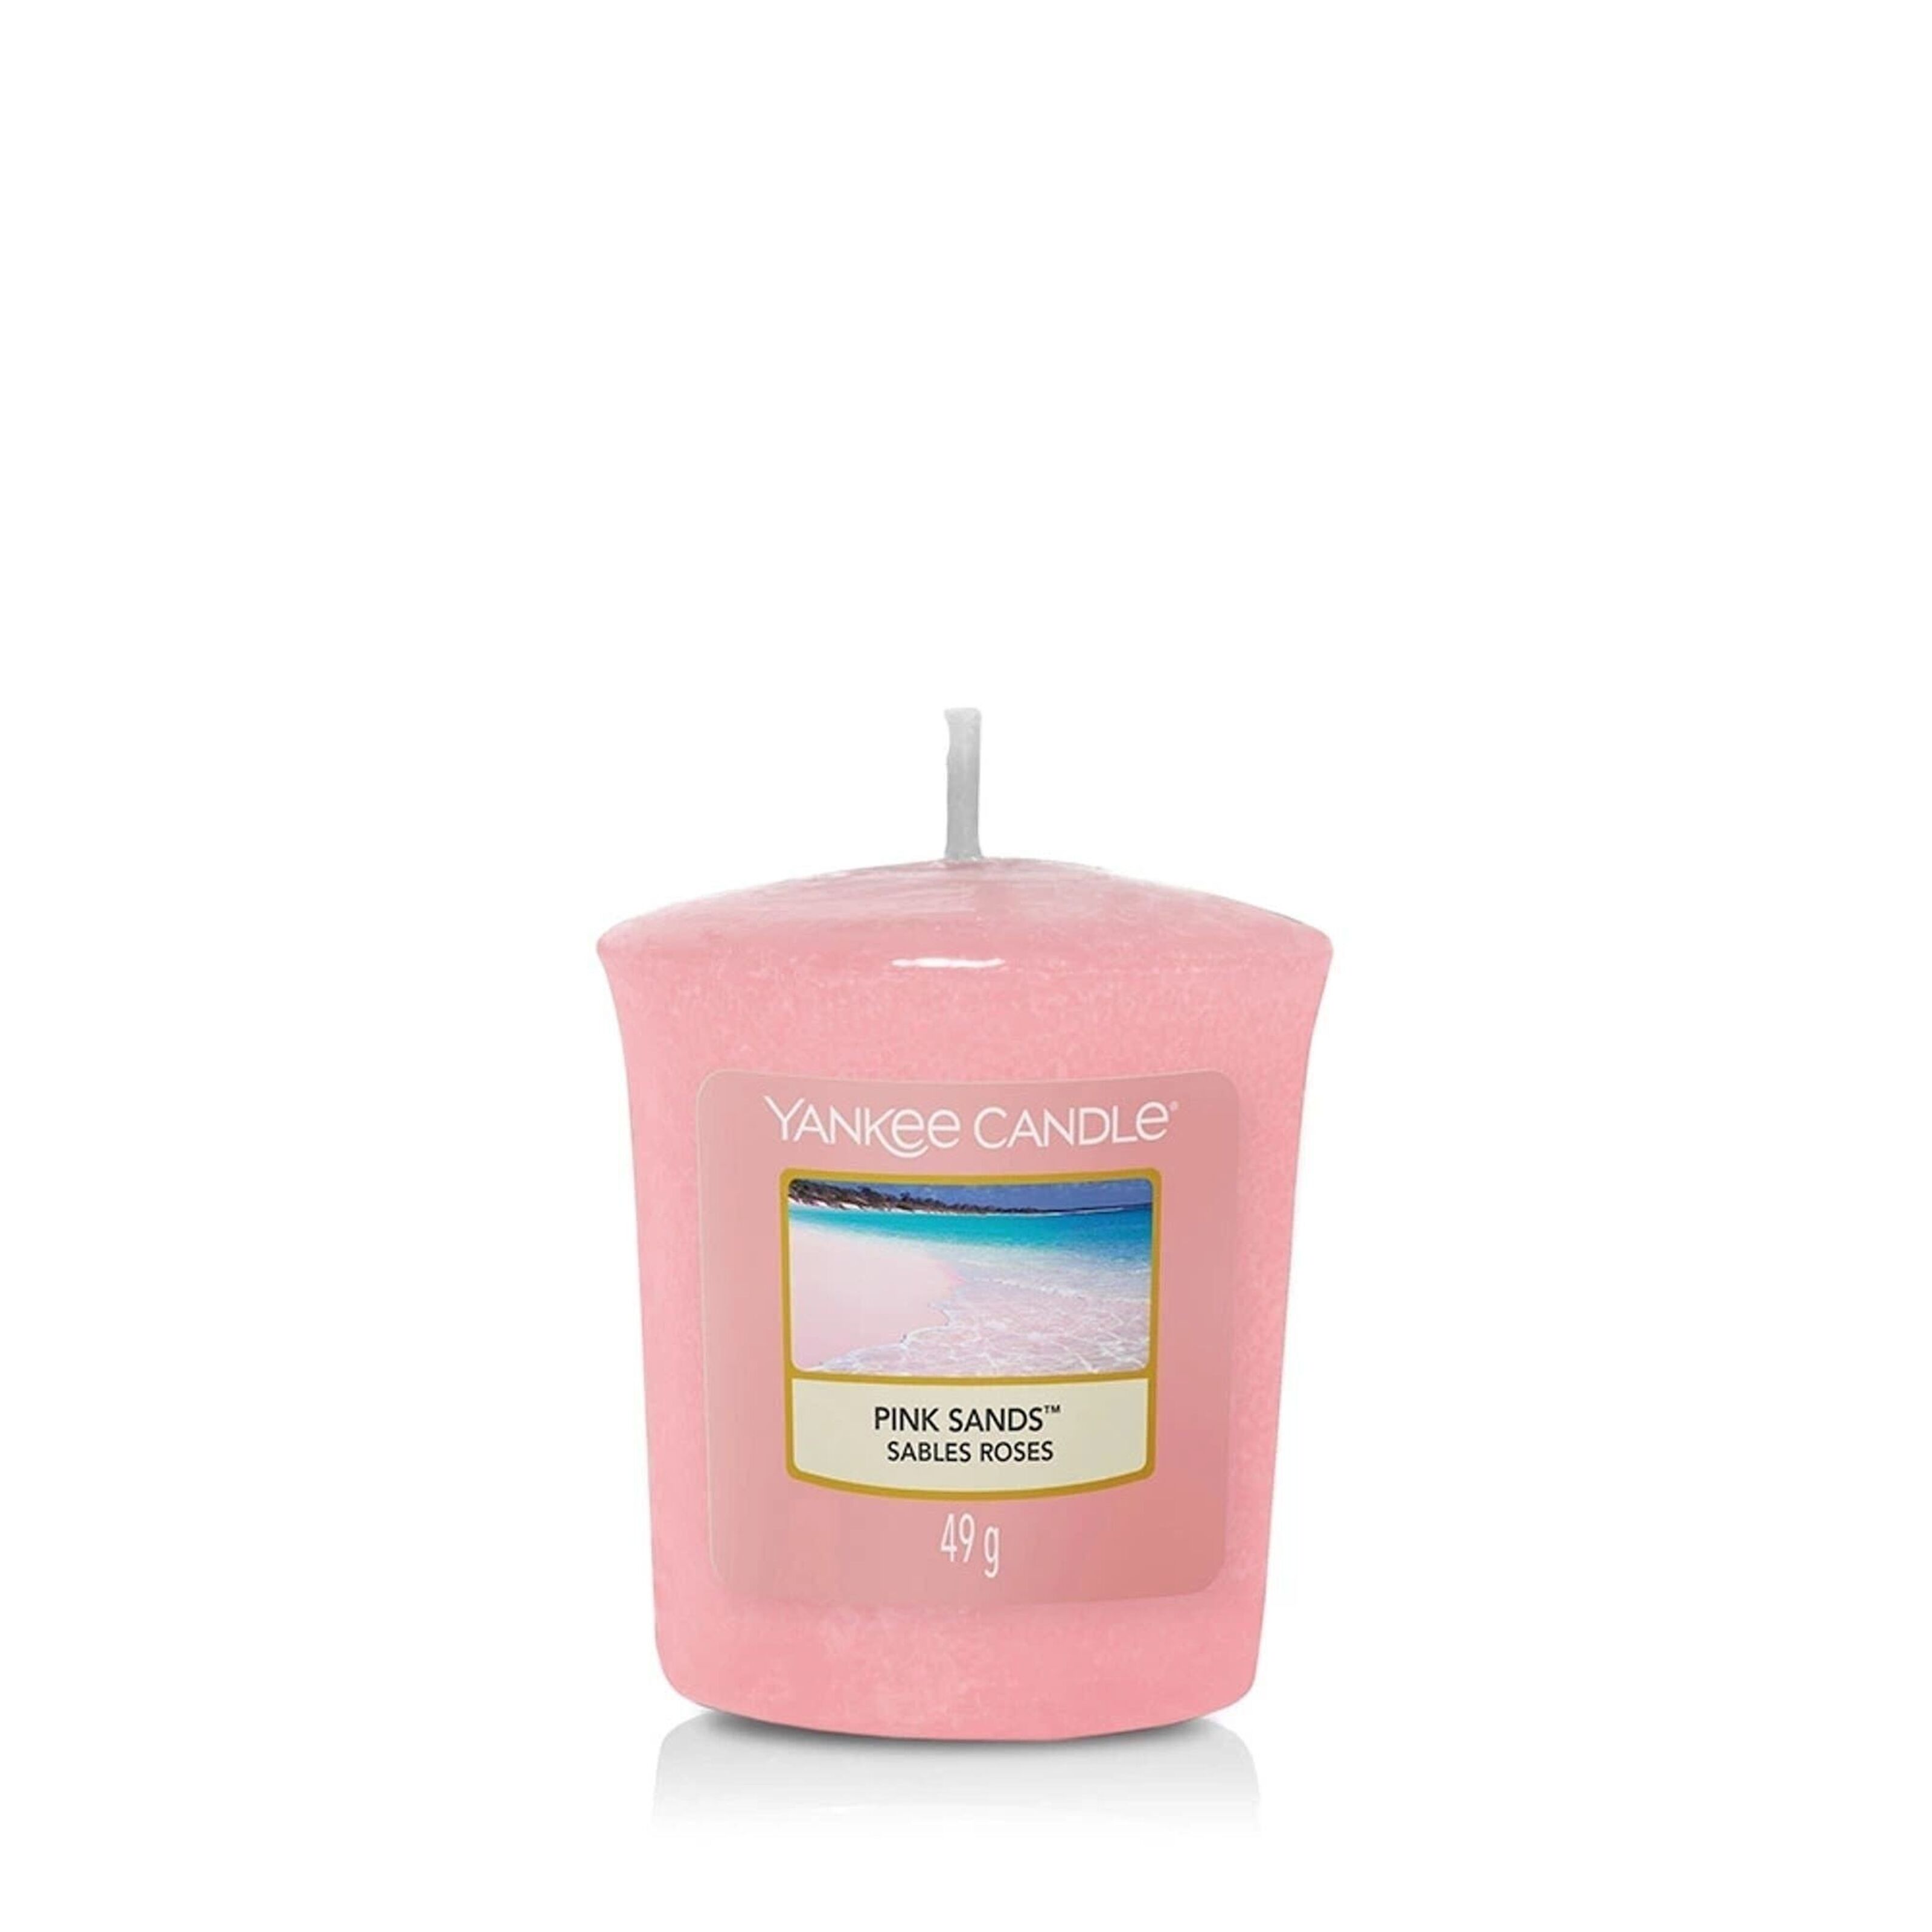 Candela Yankee candle pink sands 411gr rosa in cera stile Yankee candle